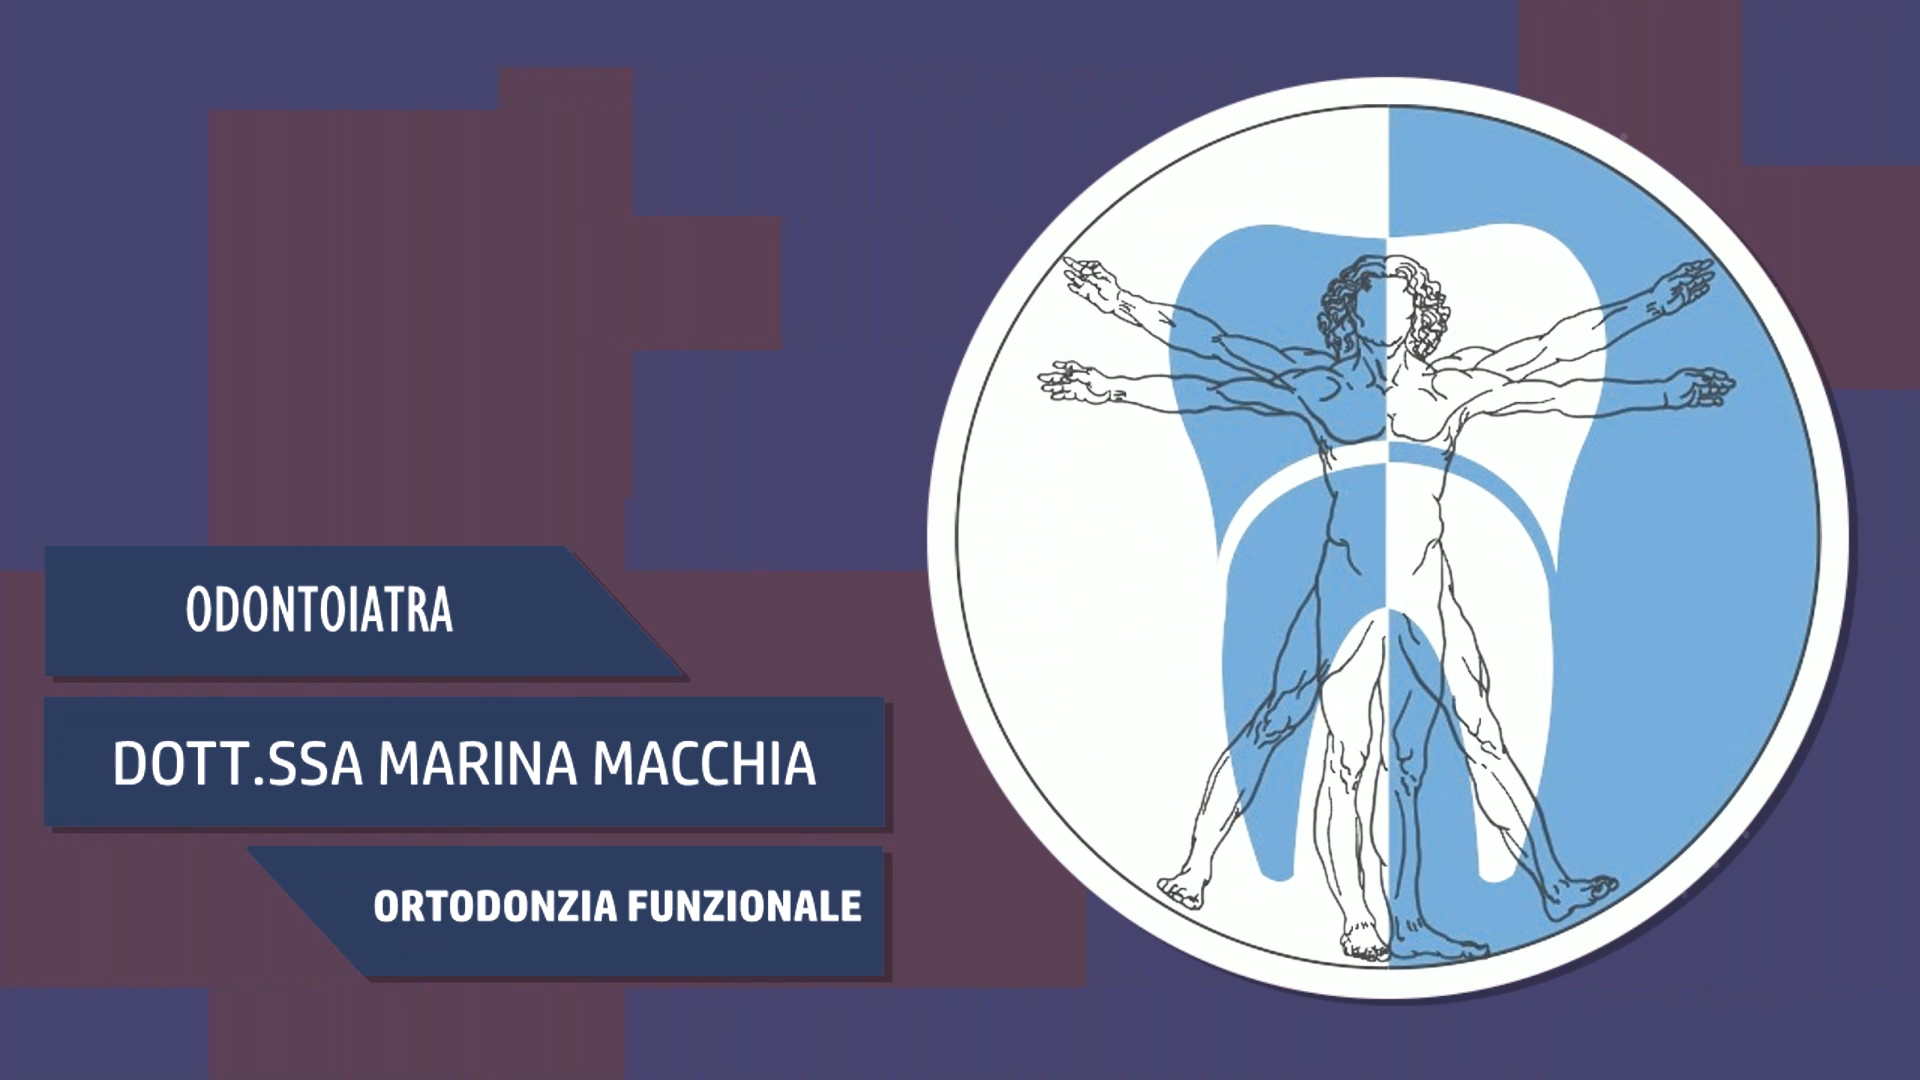 Intervista alla Dott.ssa Marina Macchia – Ortodonzia funzionale